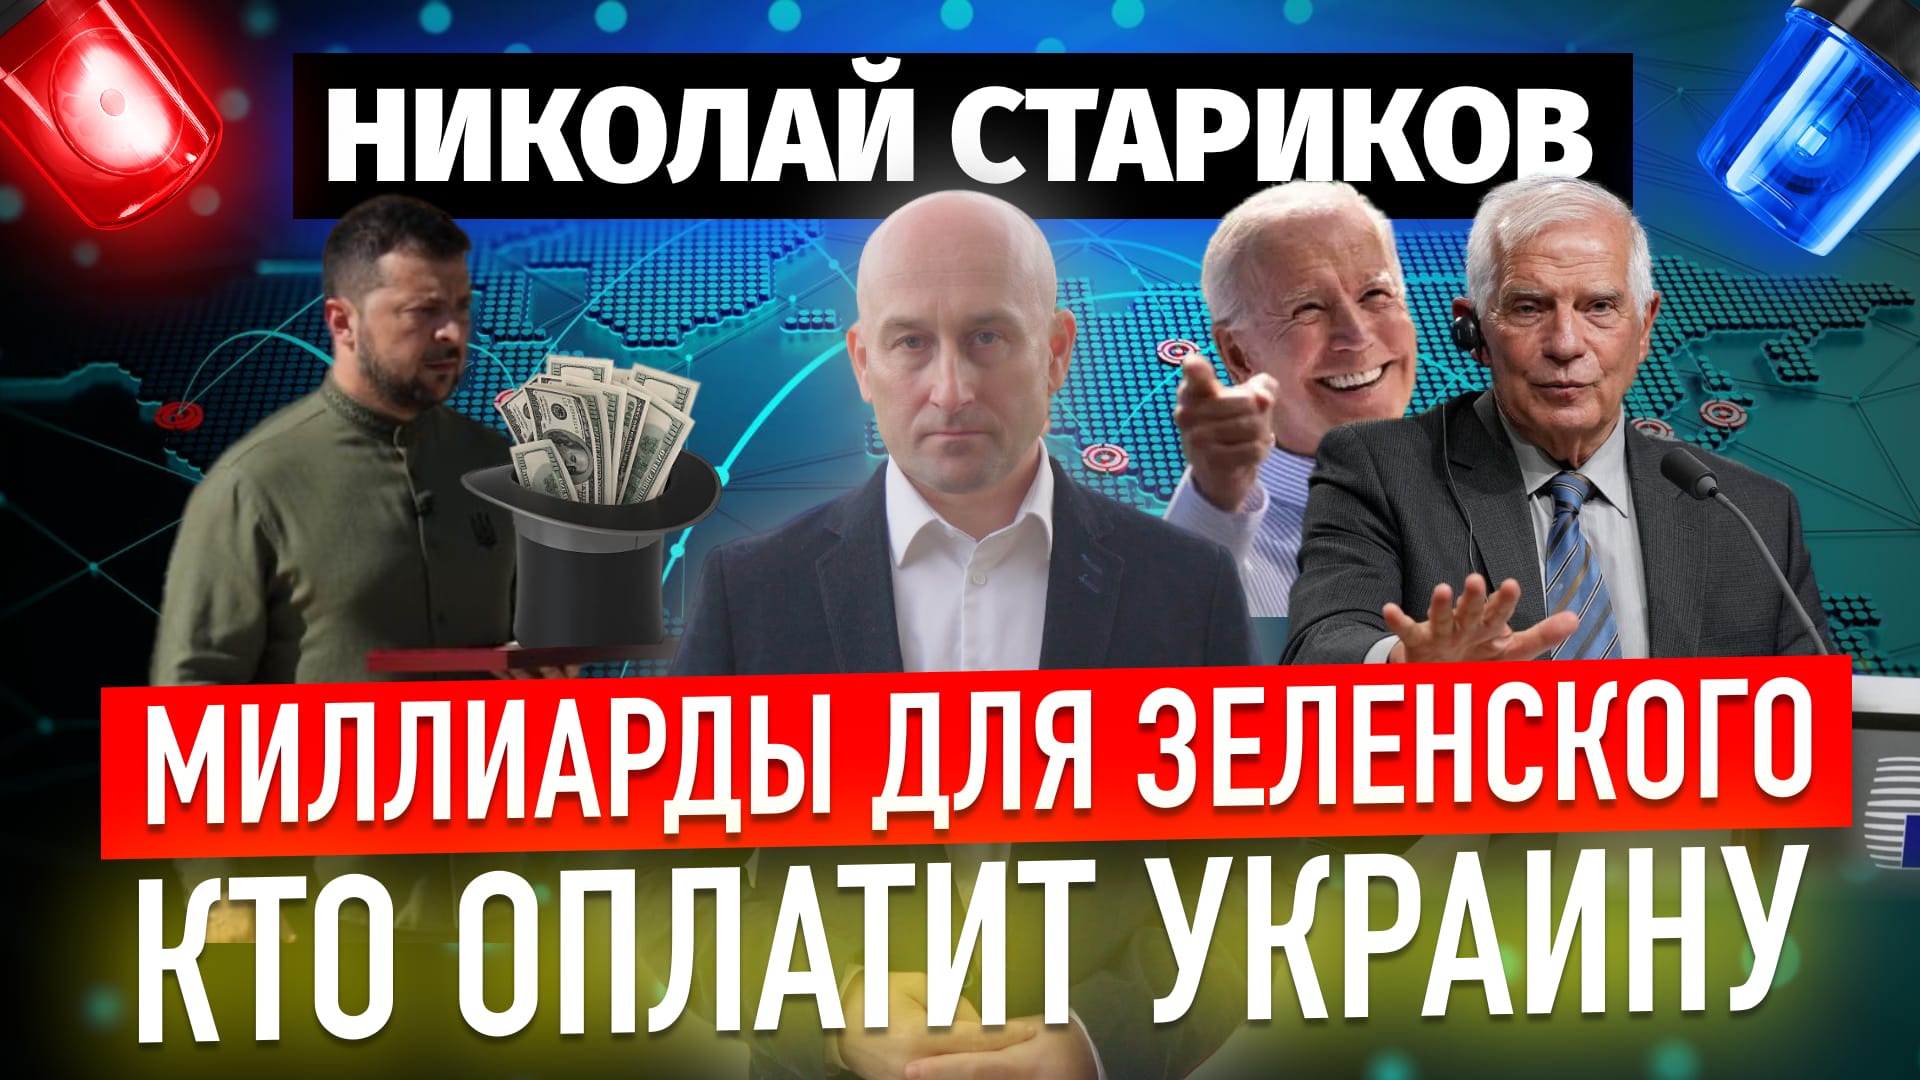 Миллиарды для Зеленского. Кто оплатит Украину?